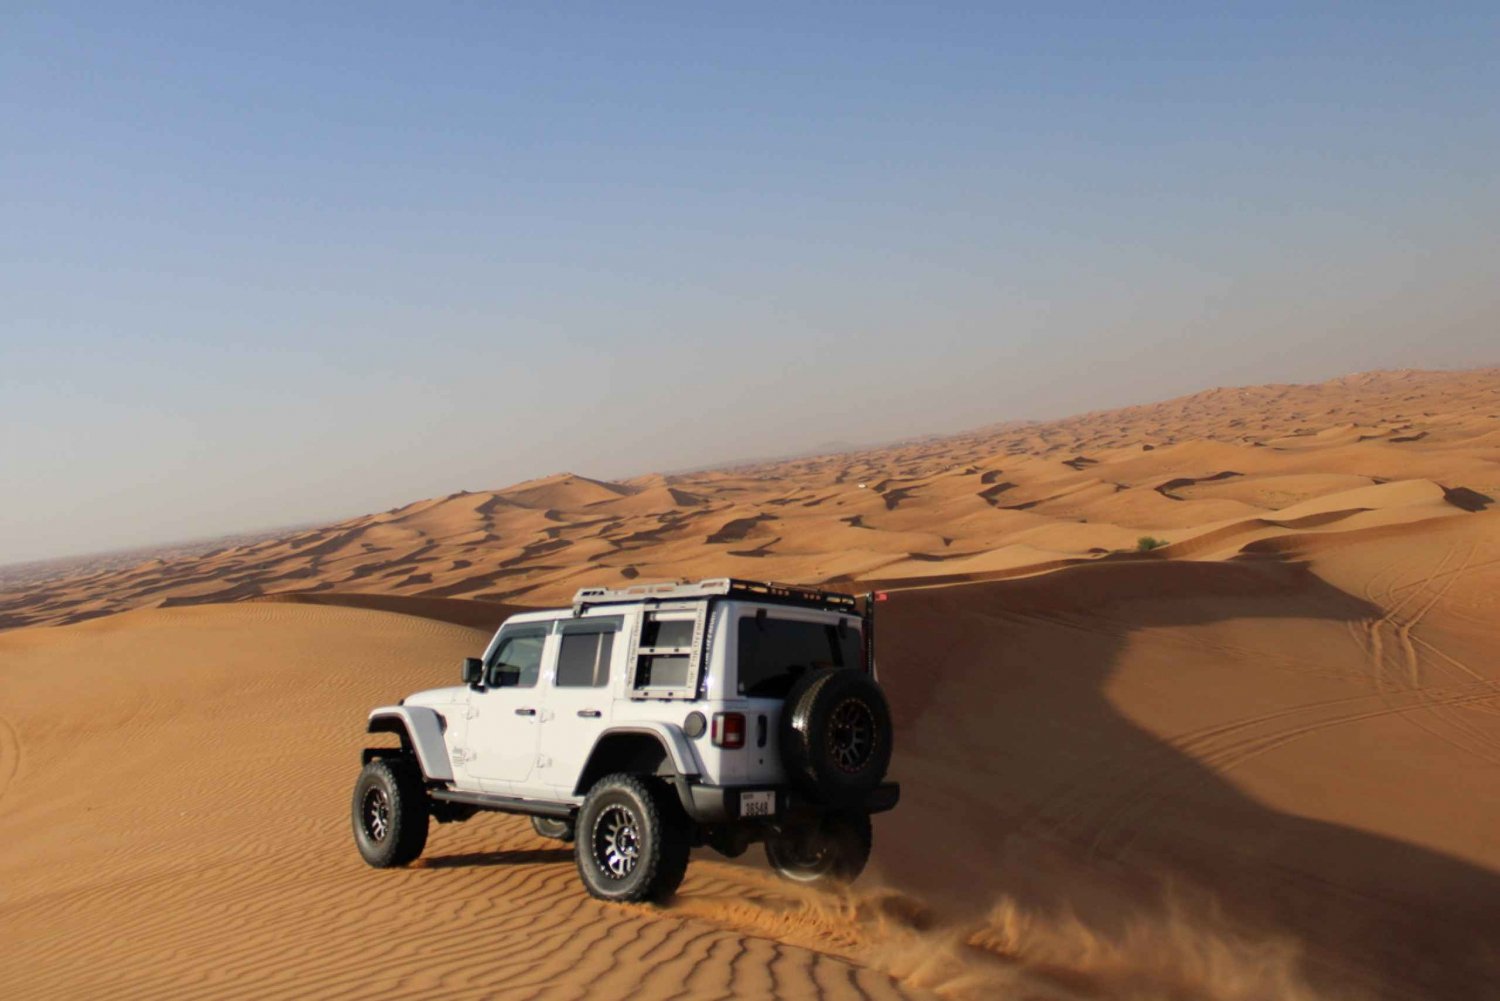 Dubai Jeep Wrangler Sunset Desert Experience i sandboarding